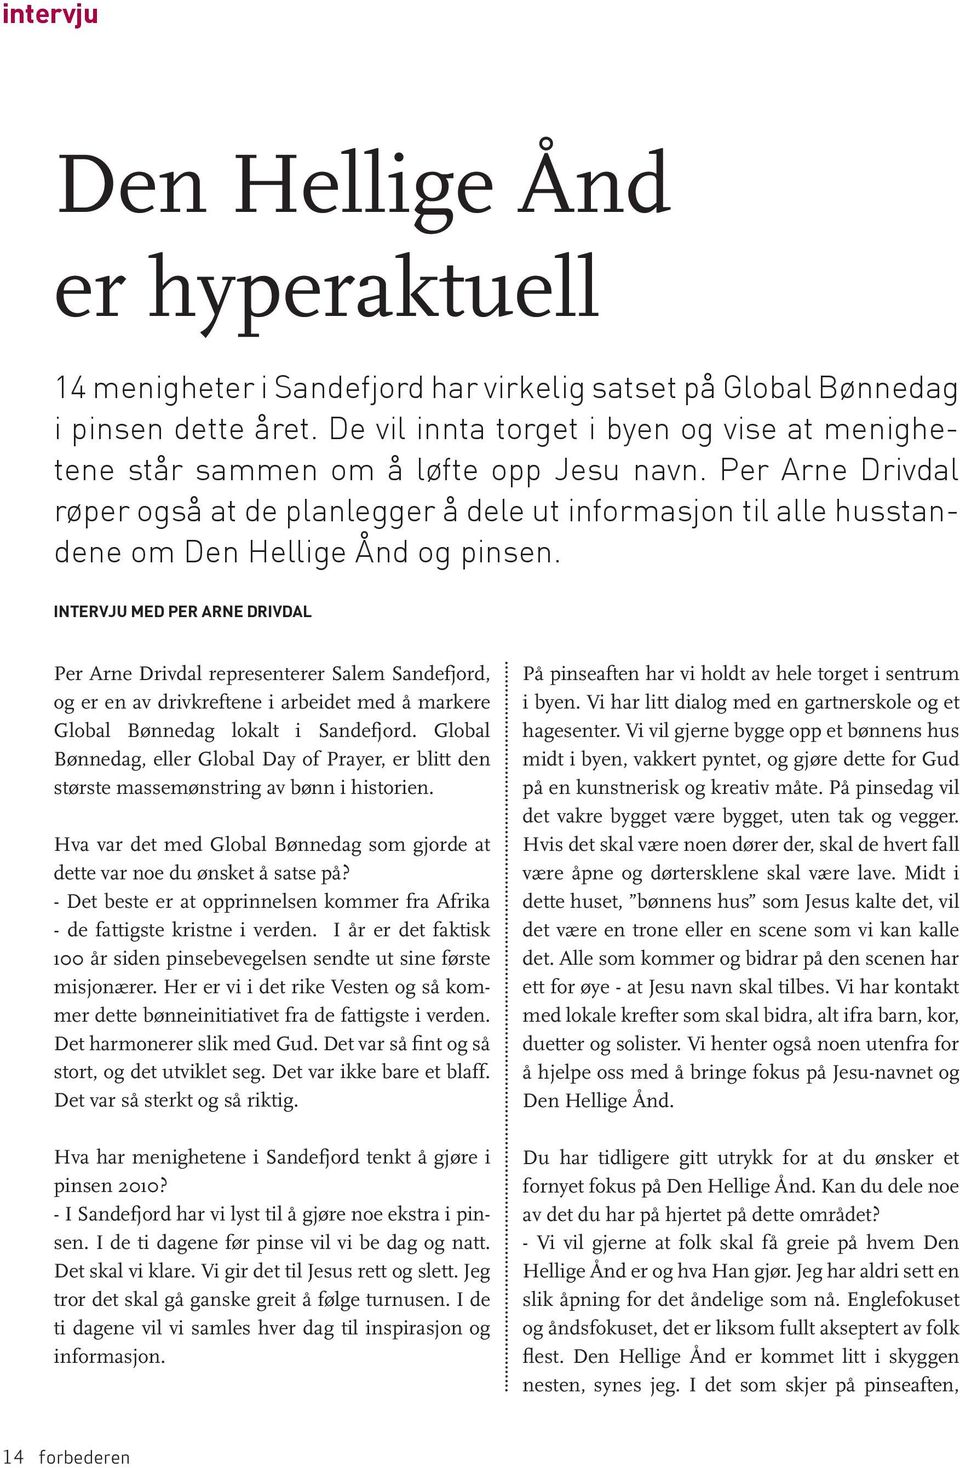 Per Arne Drivdal røper også at de planlegger å dele ut informasjon til alle husstandene om Den Hellige Ånd og pinsen.